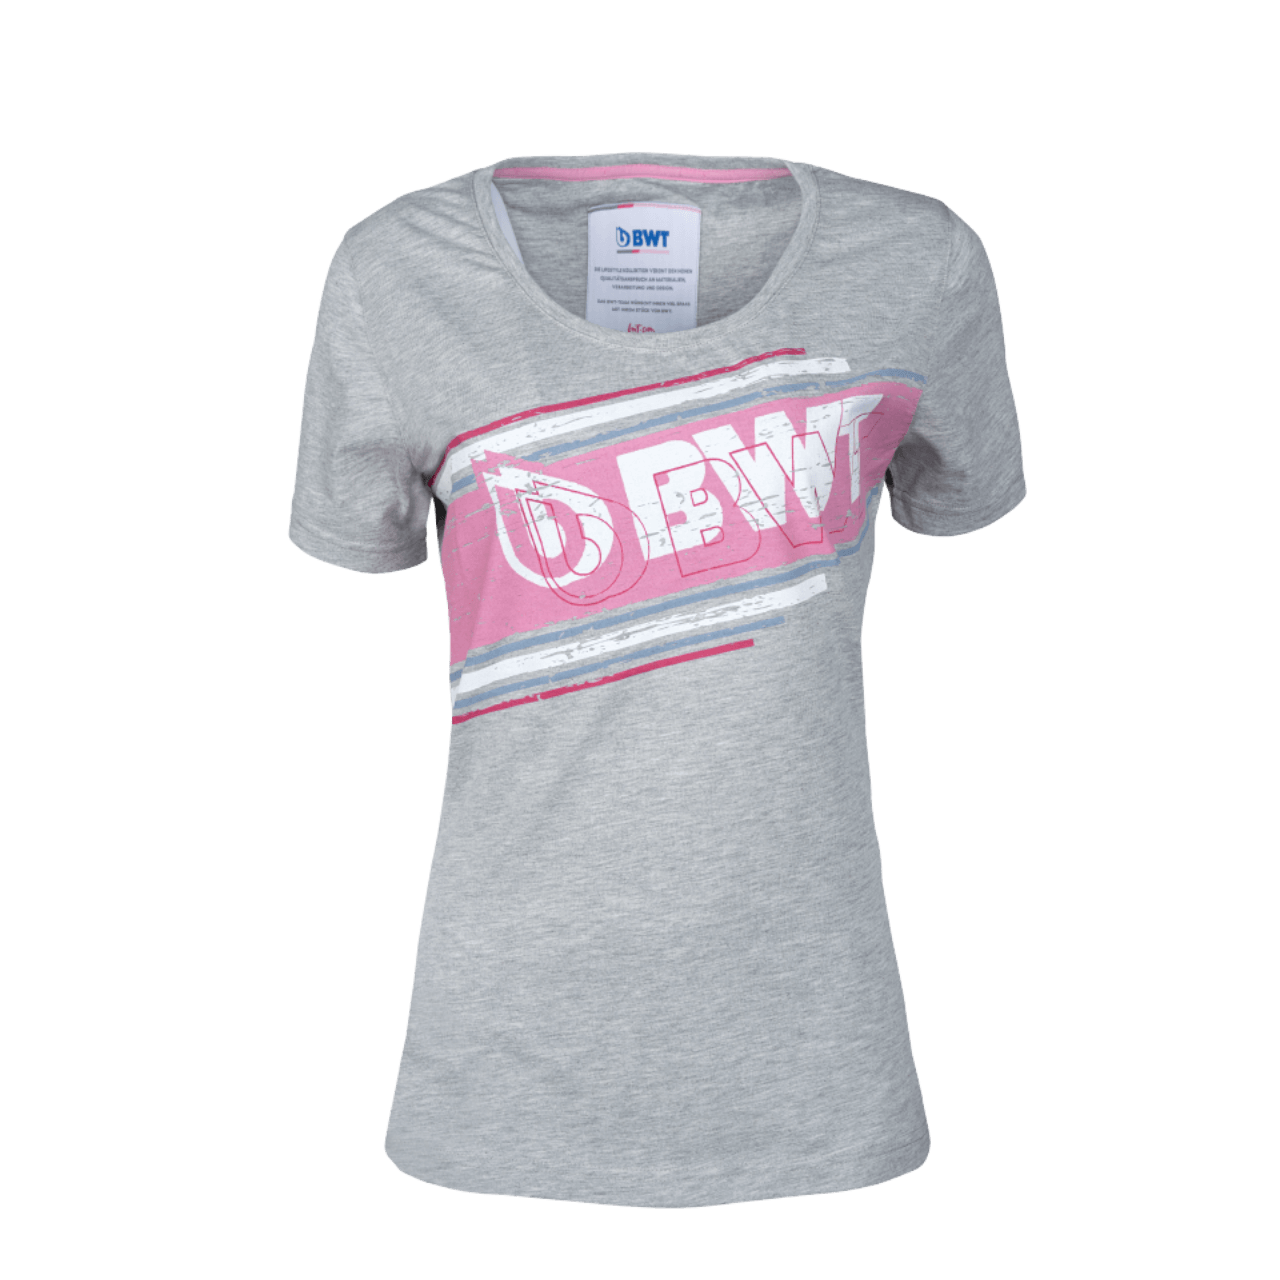 BWT Lifestyle T-Shirt Damen grau mit weißem BWT Logo auf pinken Hintergrund auf der Brust